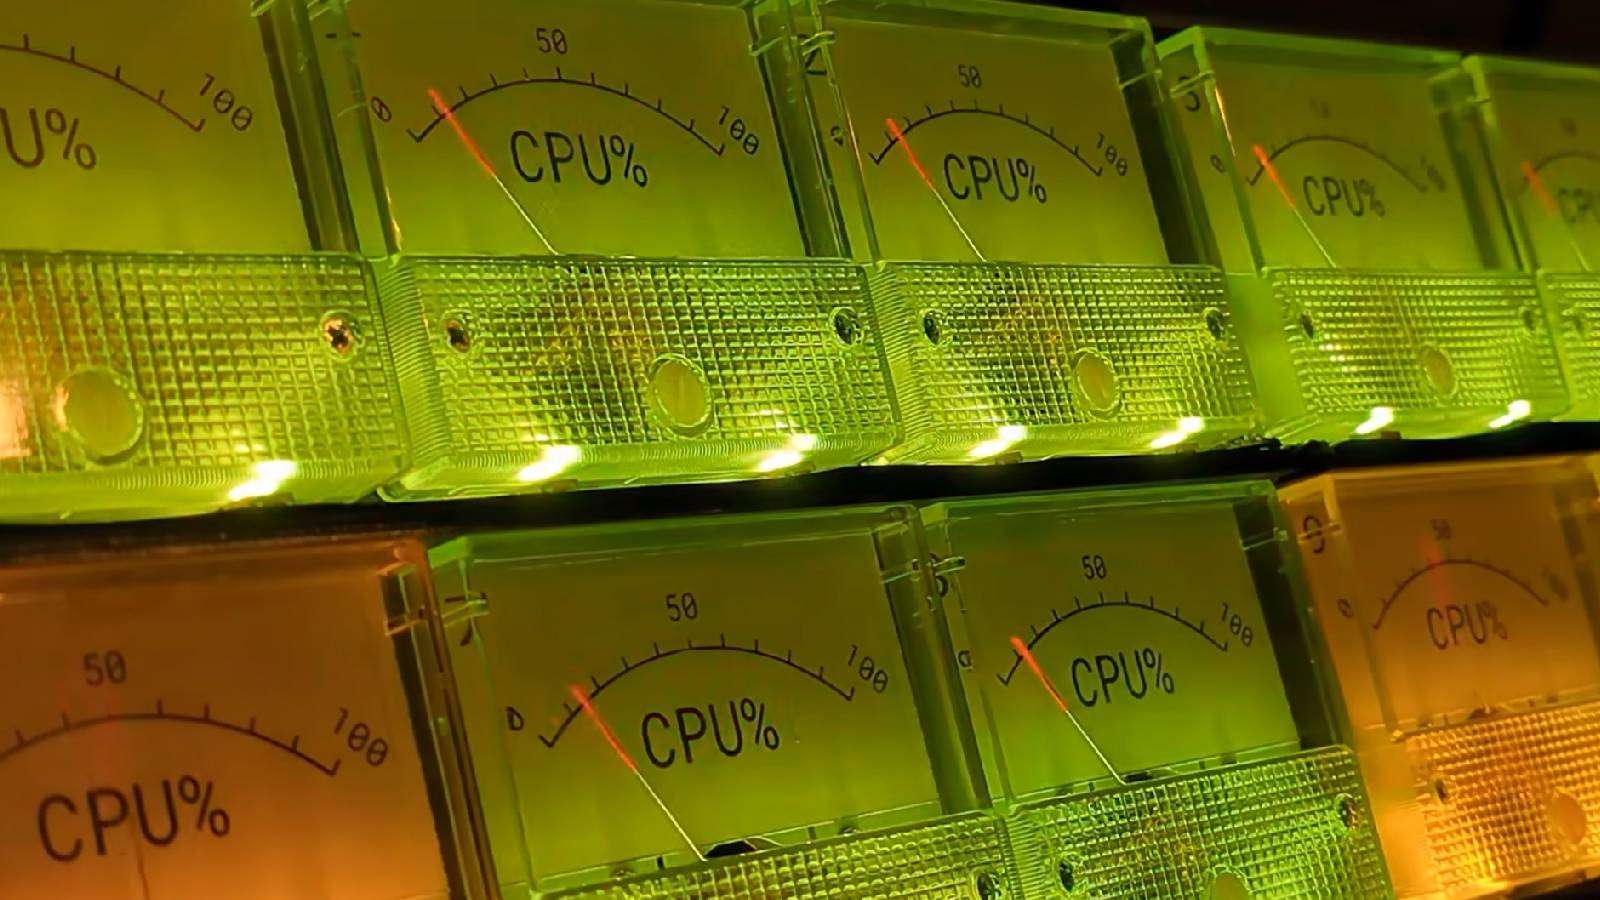 Analog CPU monitor dials